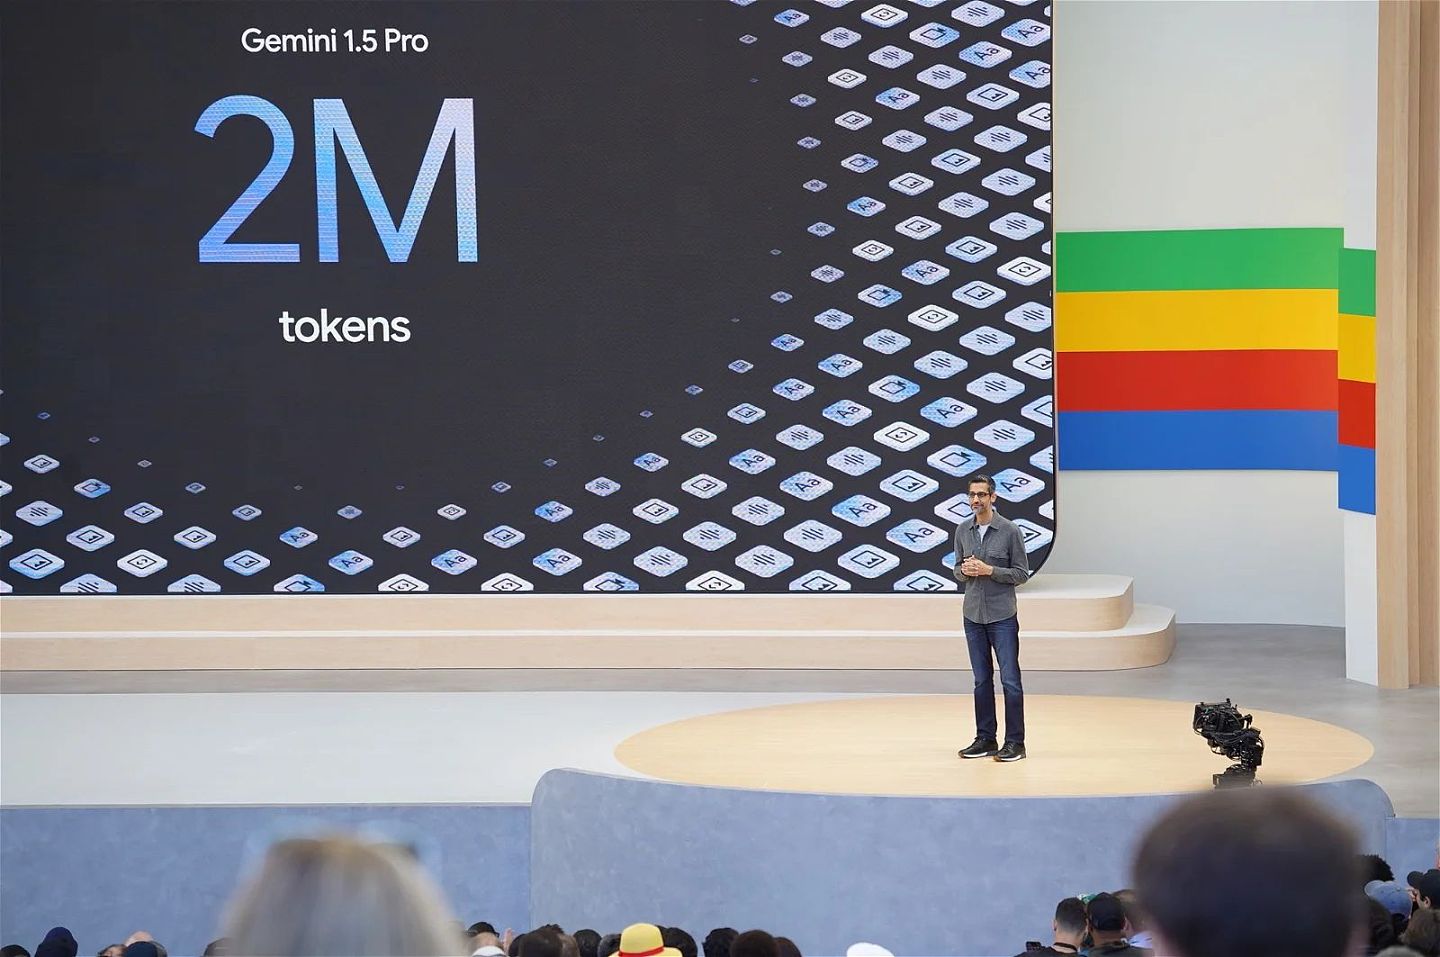 翻倍：谷歌将 Gemini 1.5 Pro 上下文窗口增加至 200 万个 tokens - 2